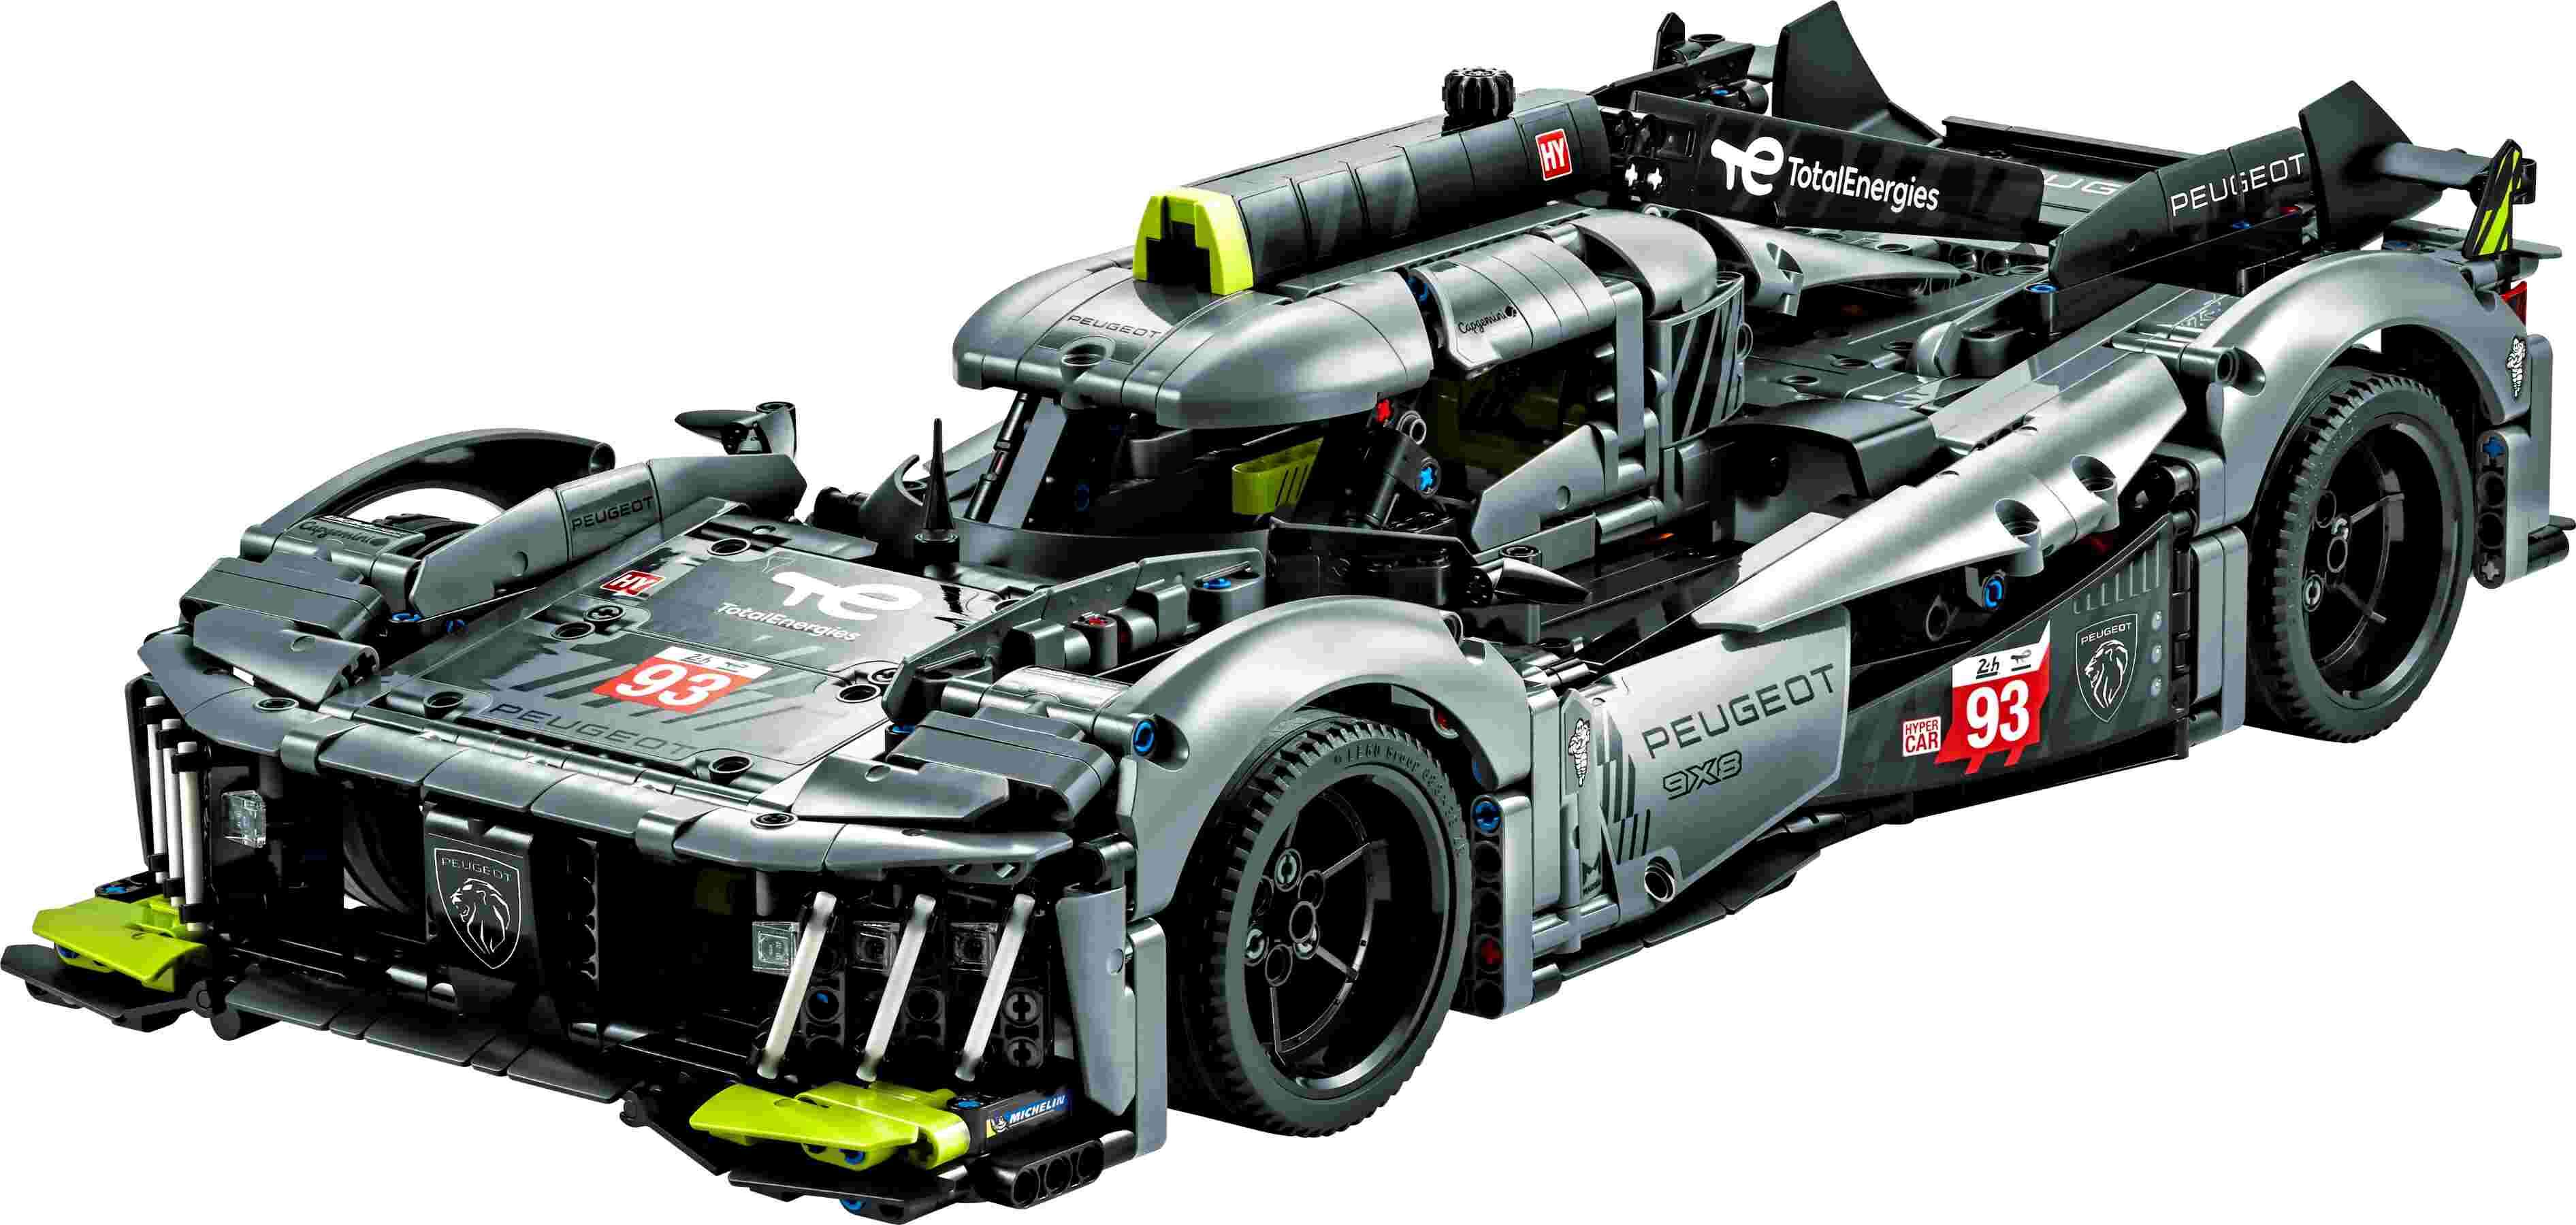 LEGO 42156 Technic PEUGEOT 9X8 24H Le Mans Hybrid Hypercar, Lichtelemente